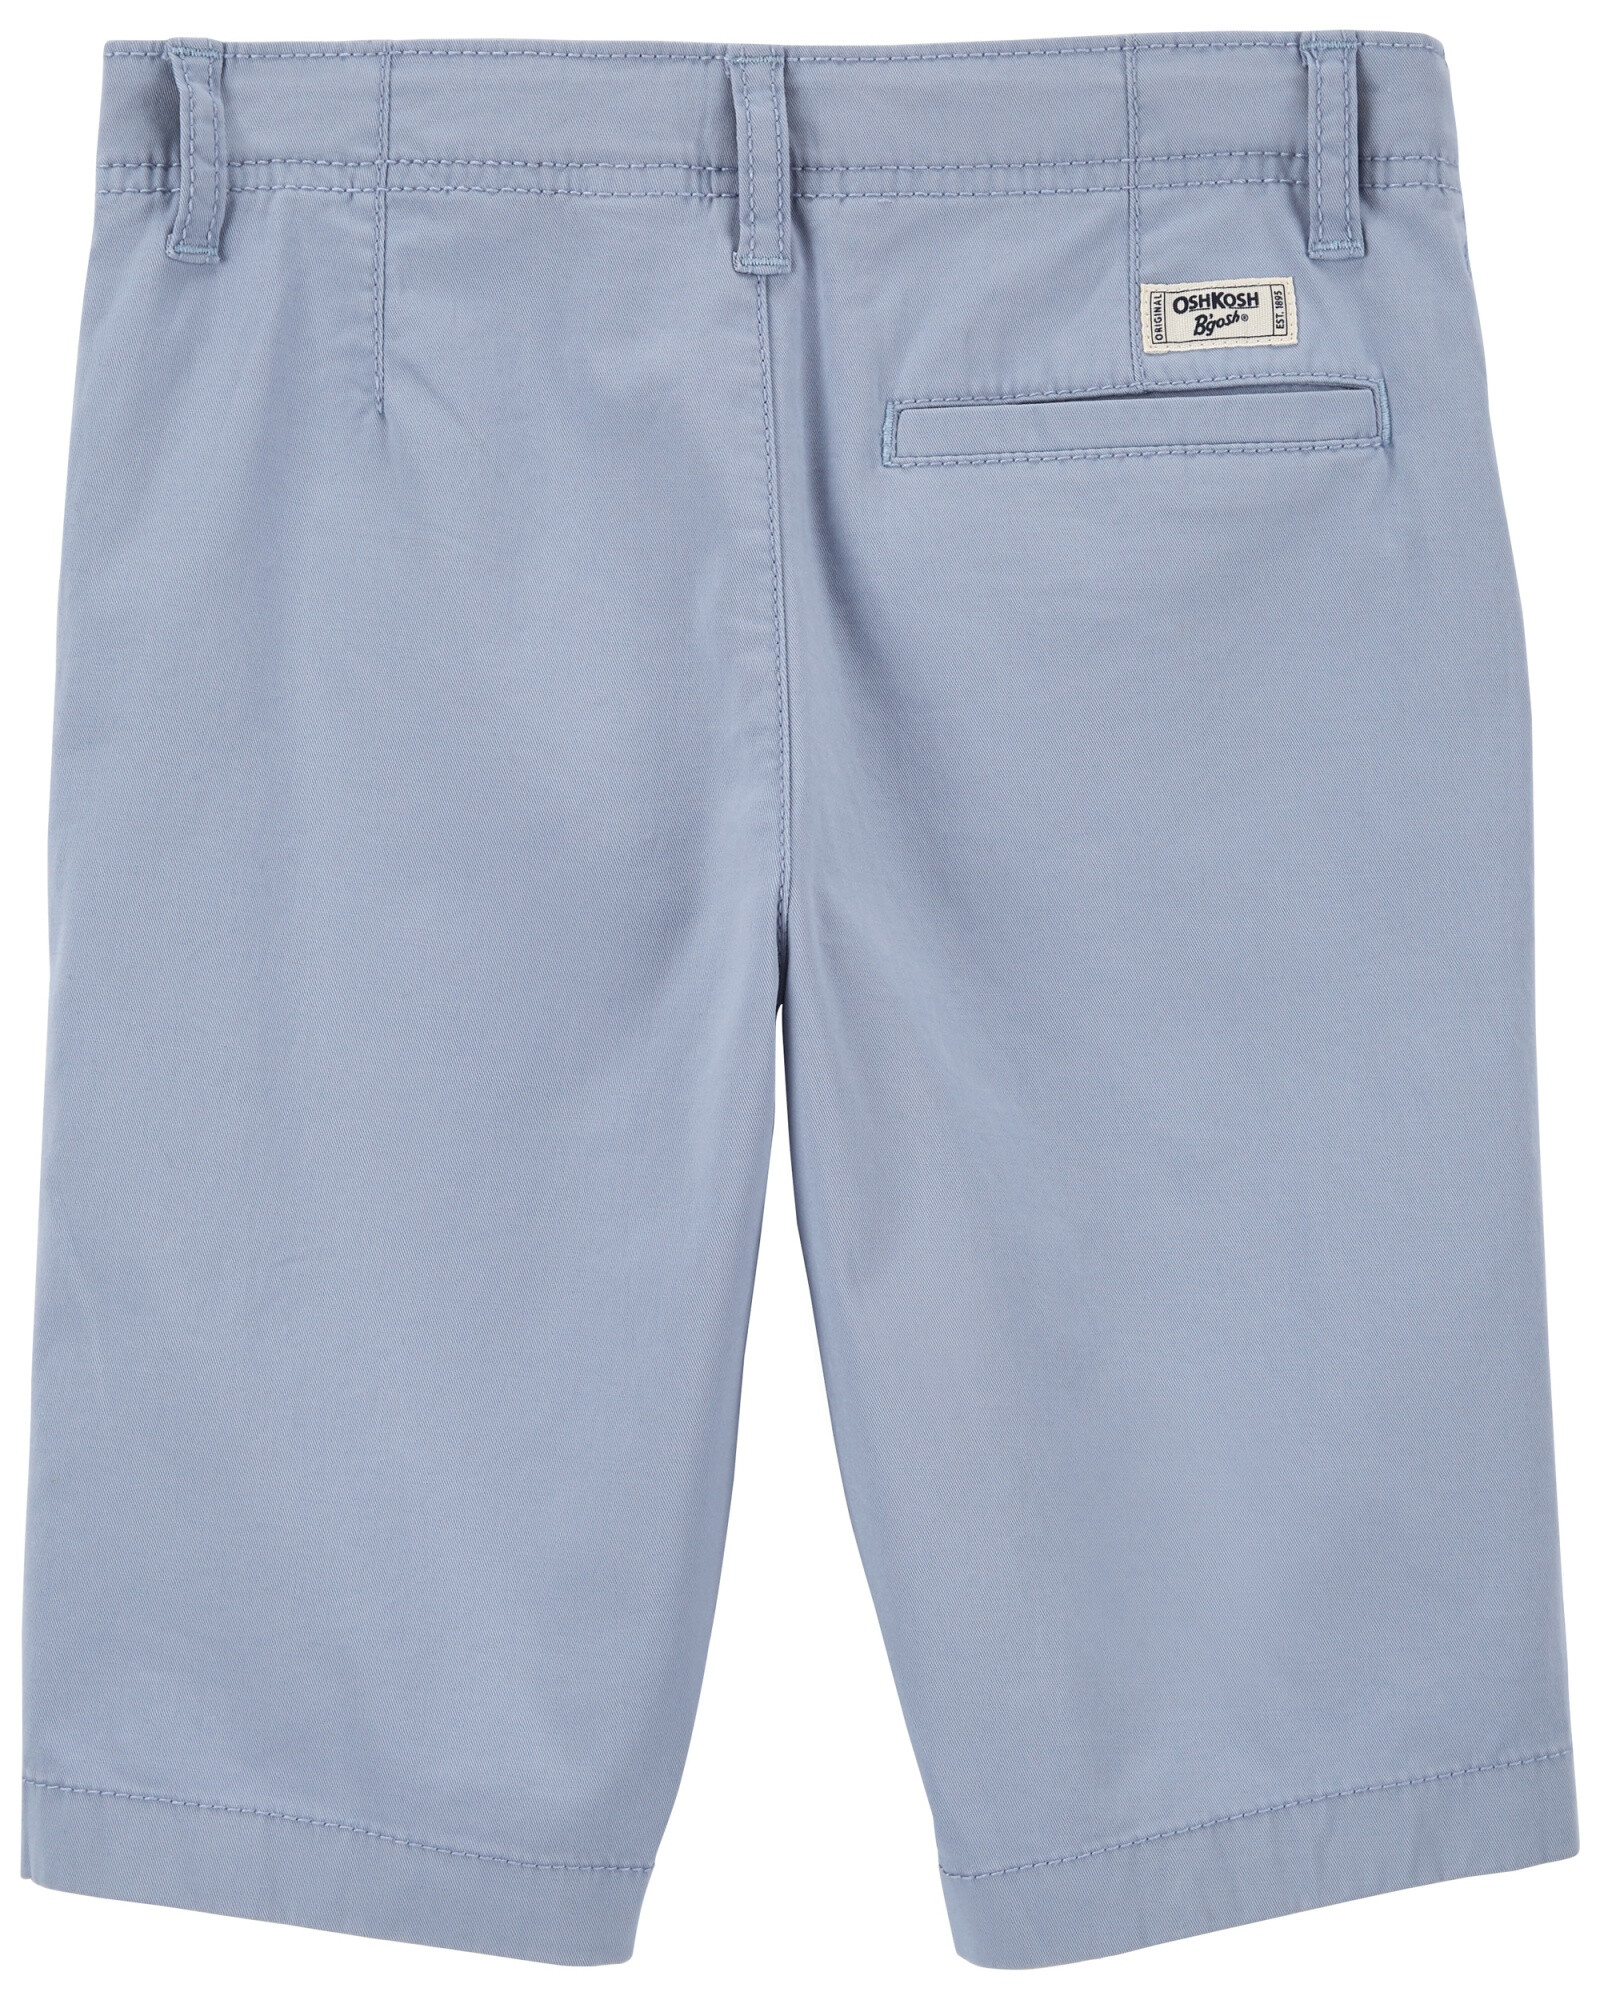 Bermuda de algodón clásica azul. Talles 6-14 Sin color